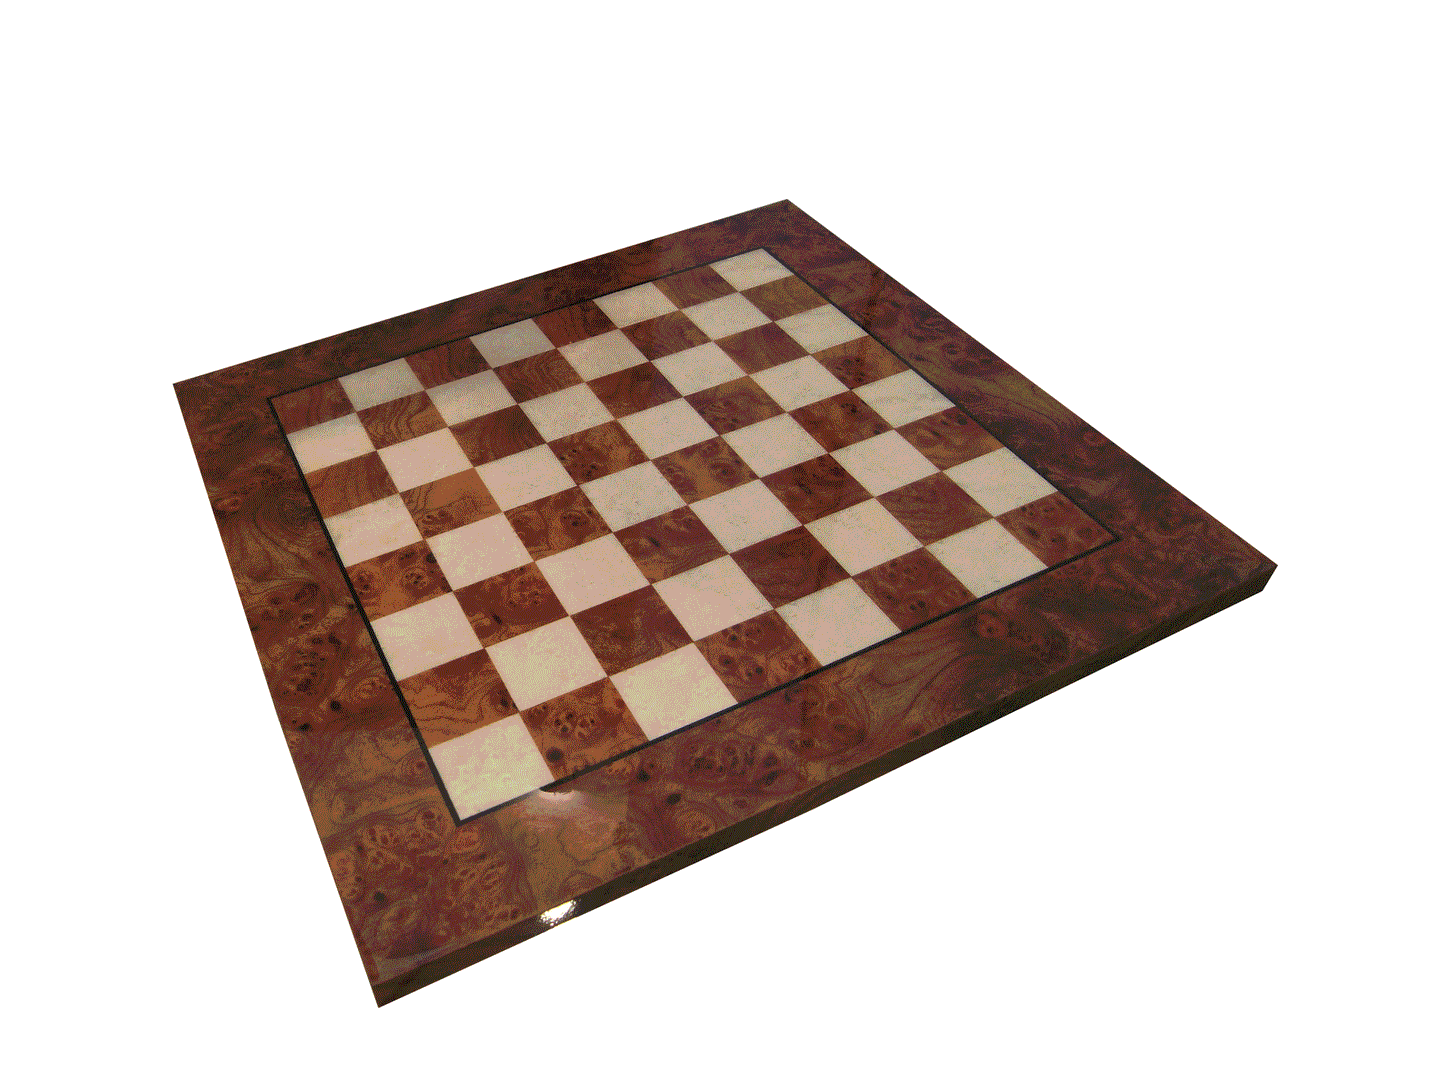 Schackbräde i Ljungträ och Alm 60x60 cm, blank yta